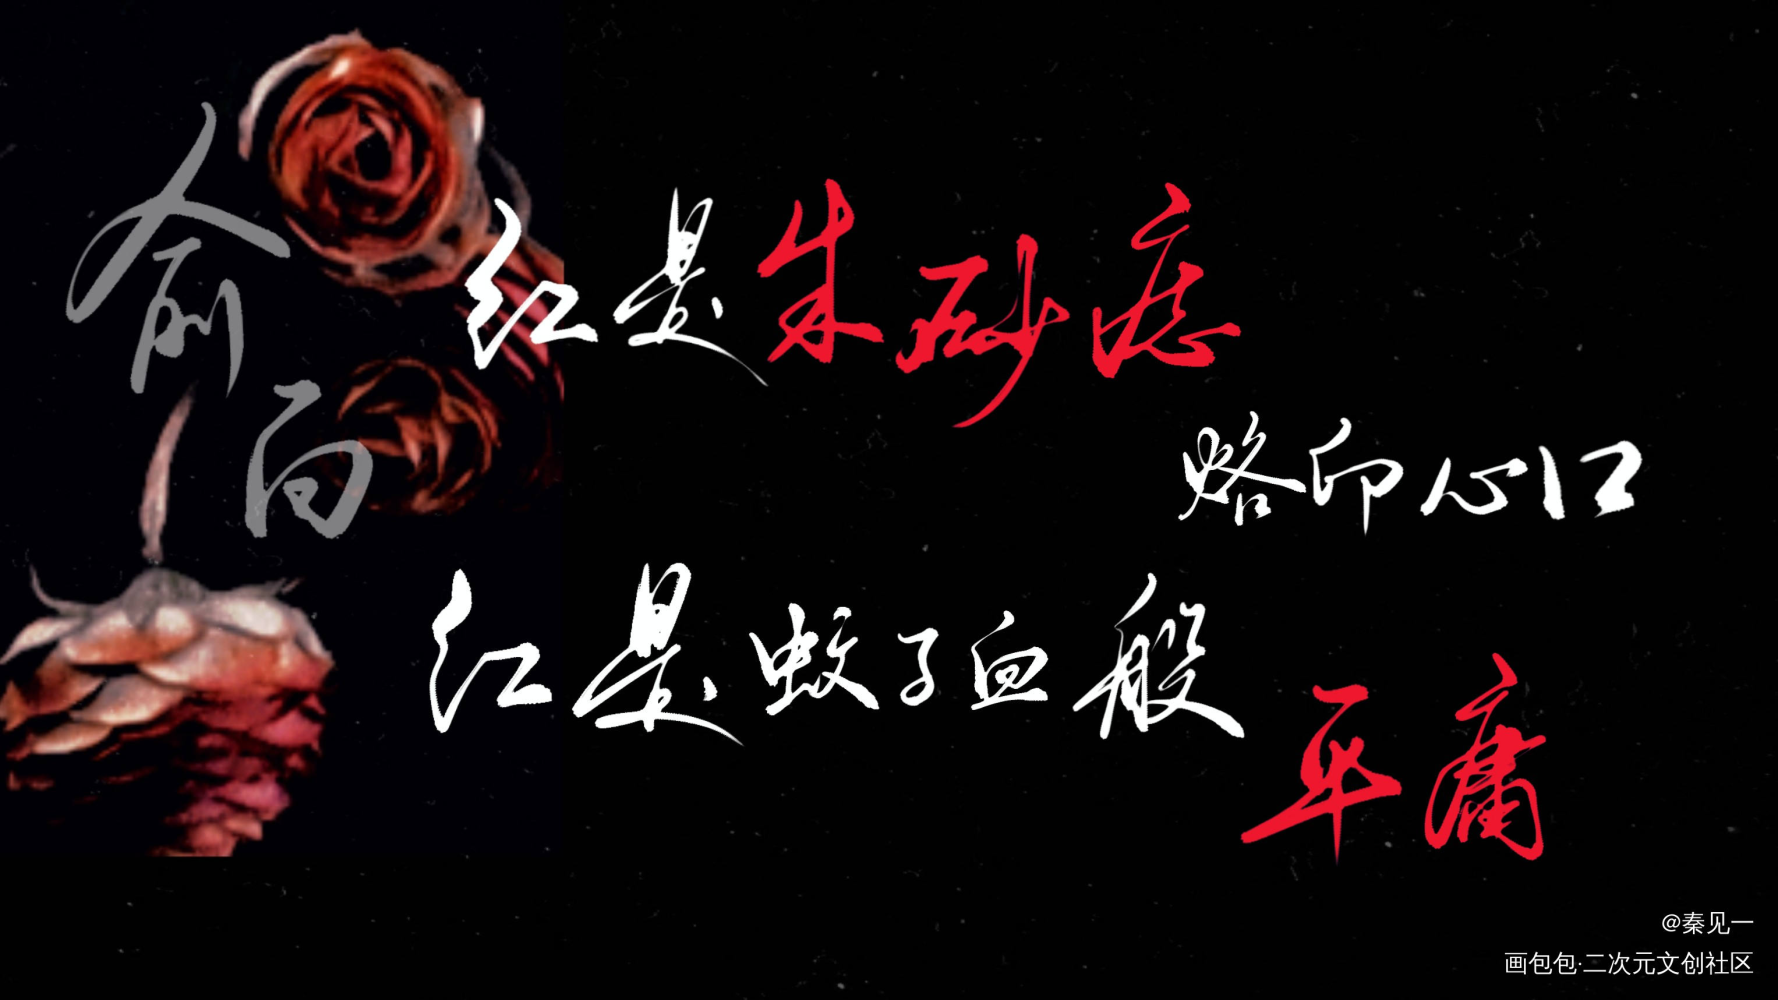 【188男团】《红玫瑰》合札_188男团188男团同人周边设计字体设计红玫瑰绘画作品